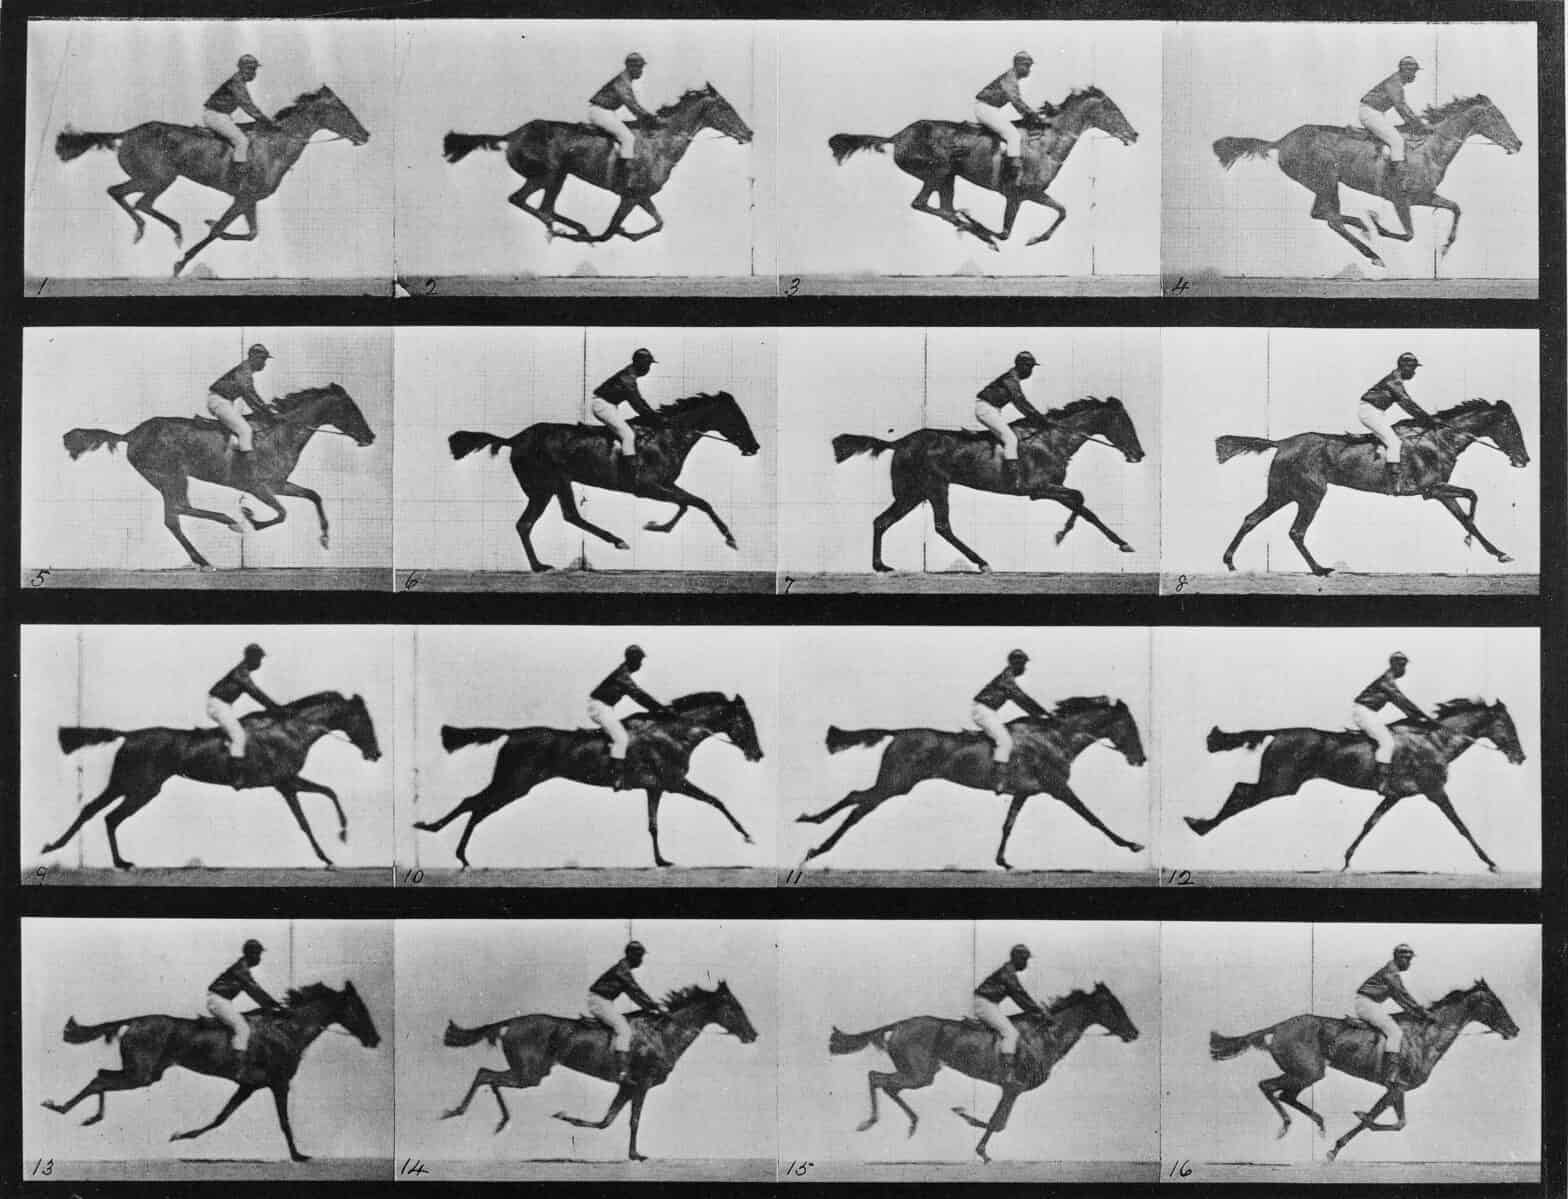 Eadweard Muybridge fotade djur och människor på 1800-talet i protofilmiska experiment.